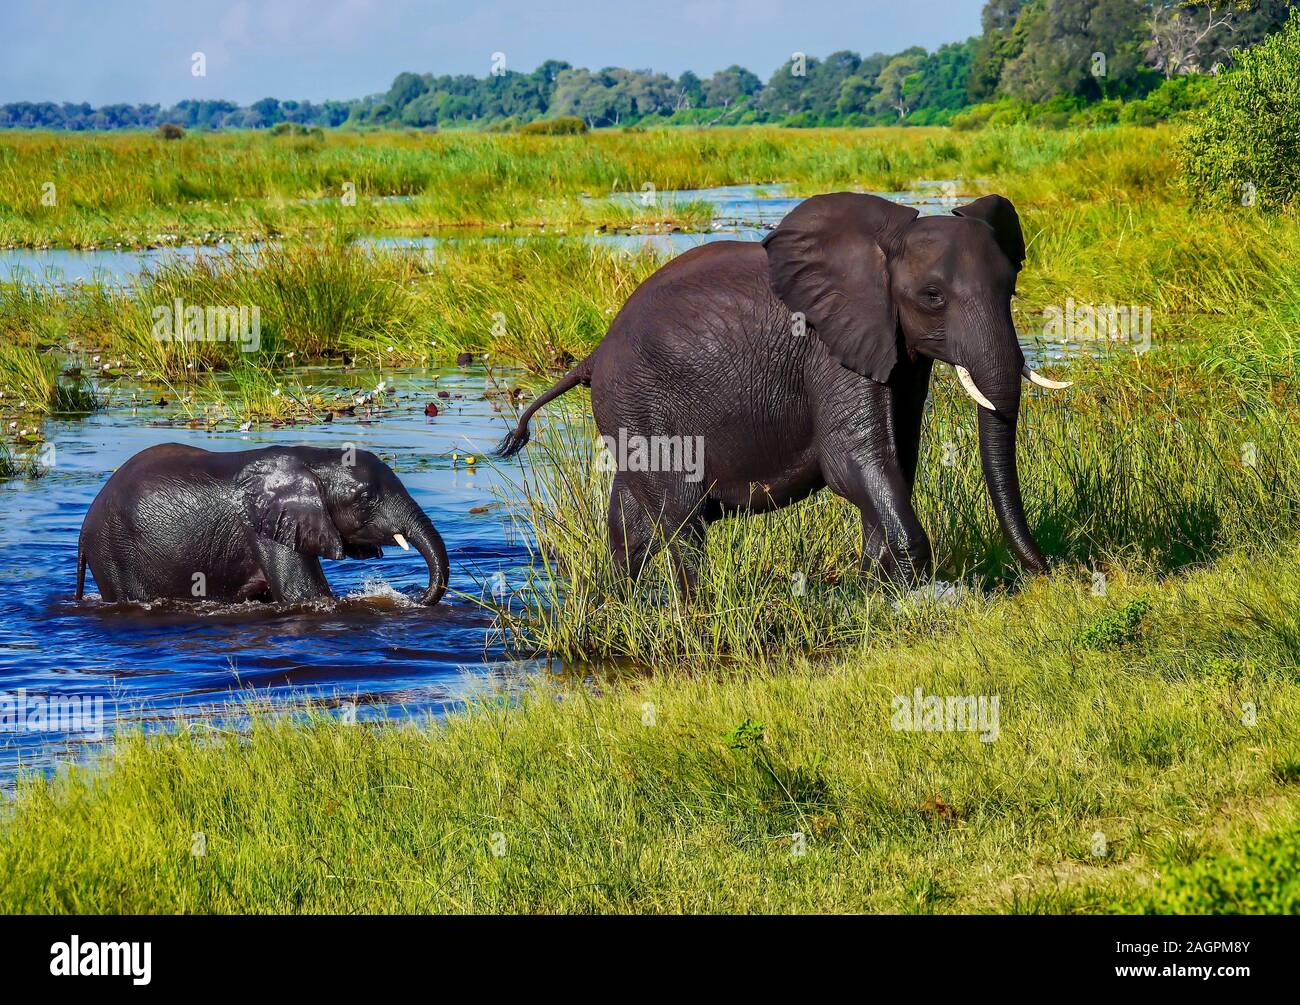 L'éléphant d'une mère conduit son bébé humide hors de l'eau et sur un rivage herbeux, après une baignade dans une rivière dans un cadre verdoyant et luxuriant Delta de l'Okavango Banque D'Images